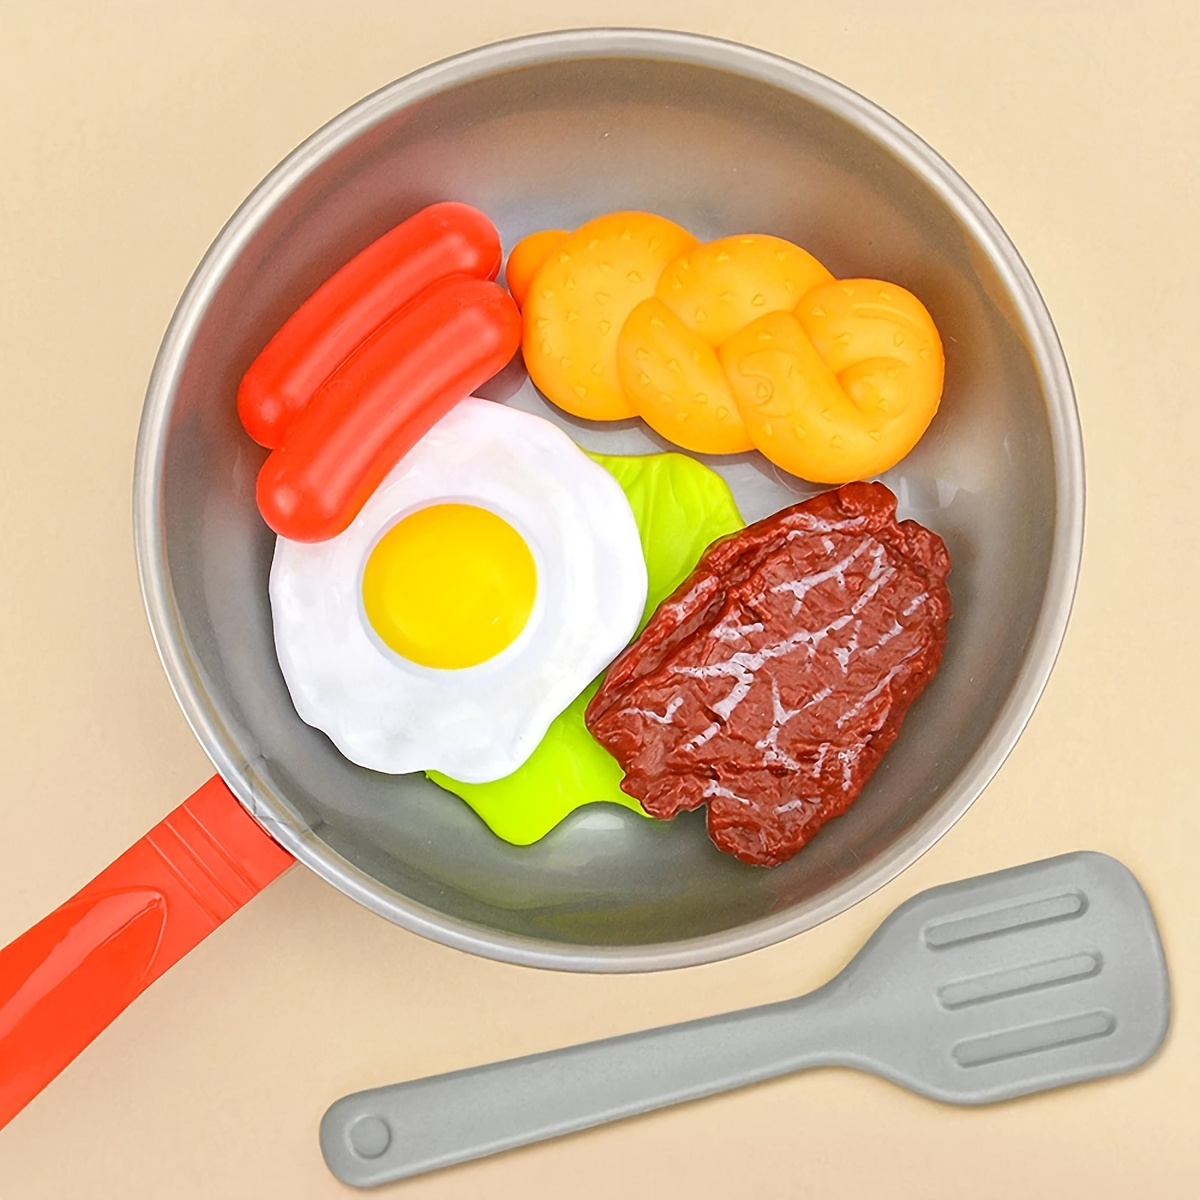  Theefun Accesorios de cocina de juego: juegos de comida para  niños, juego de cocina de simulación con olla de presión de plástico,  sartén, utensilios de cocina, regalos educativos de aprendizaje para 